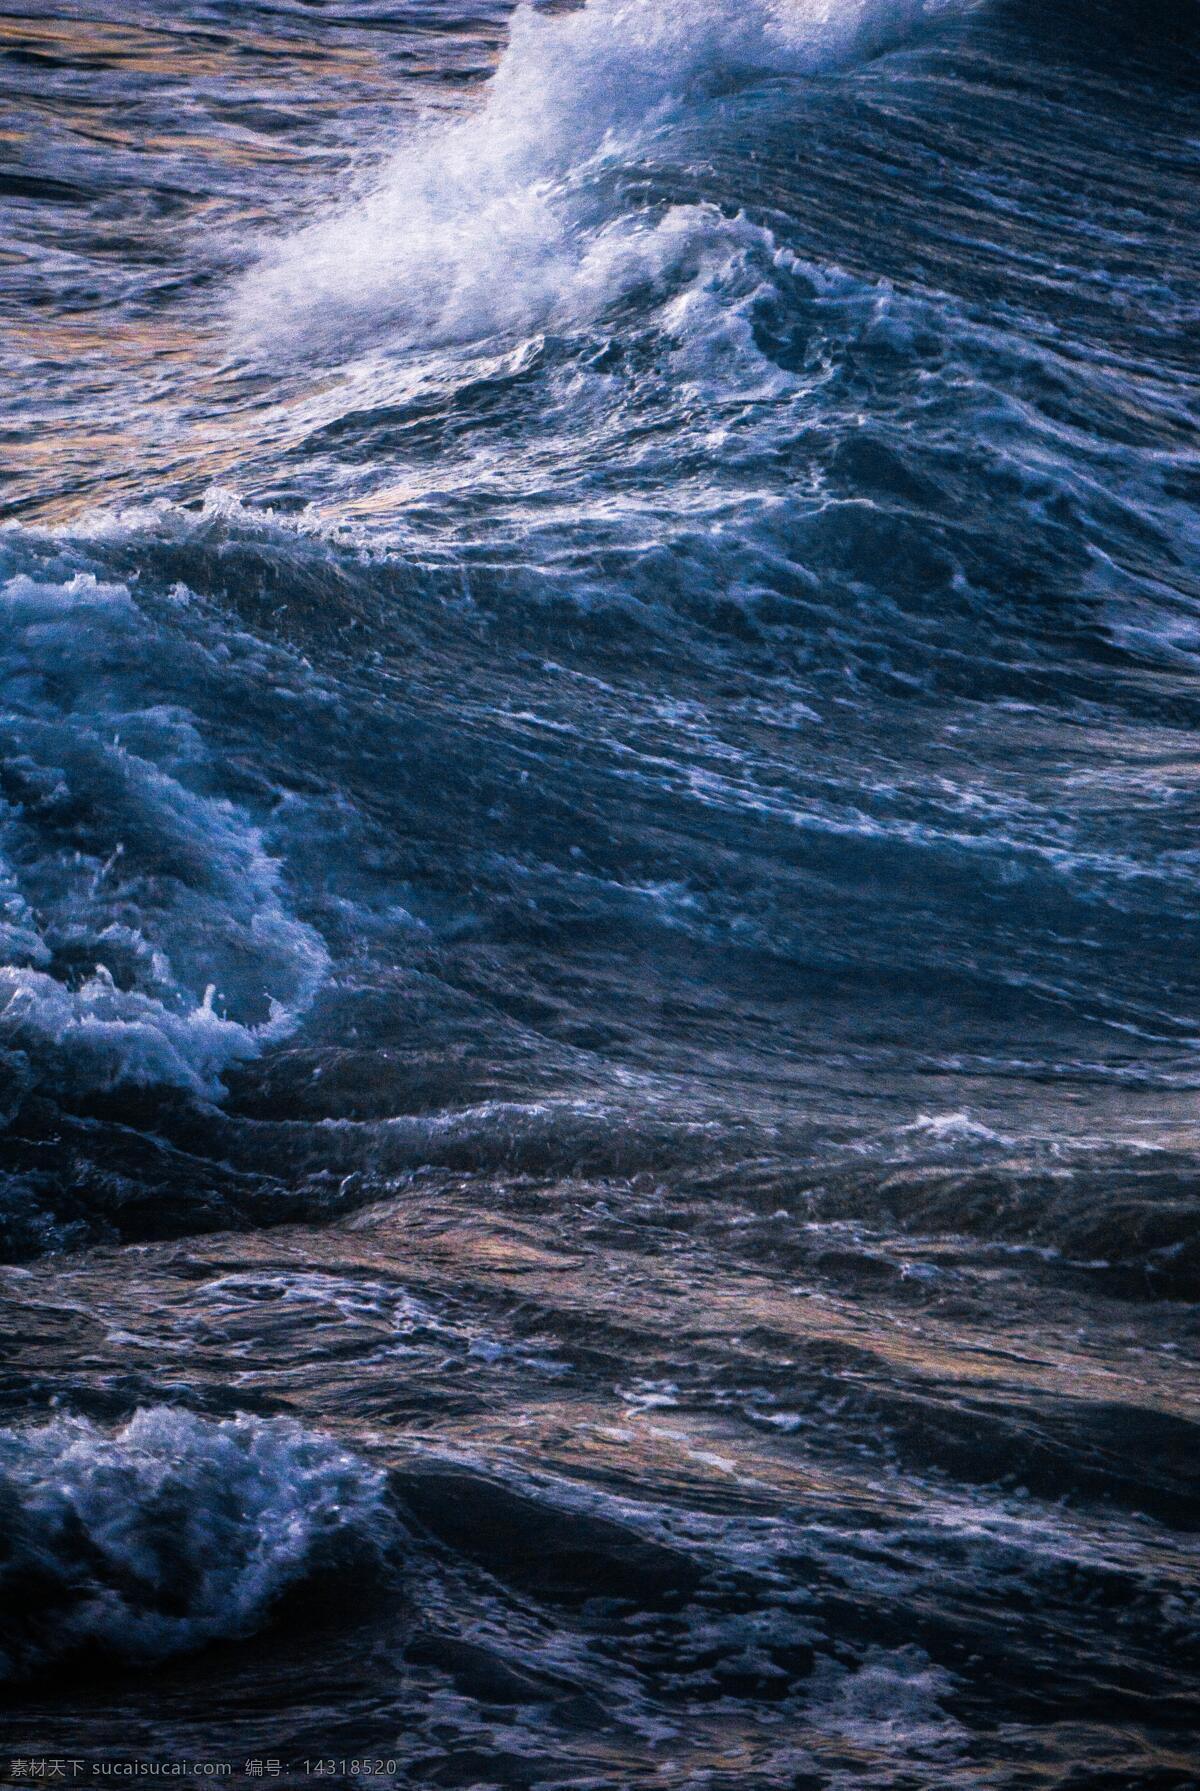 大海 海浪 汹涌 磅礴 大海波涛 大浪 平静大海 海面 海平面 蓝色 波纹 宽广大海 广阔海洋 海面背景 图库海洋自然 自然景观 自然风景